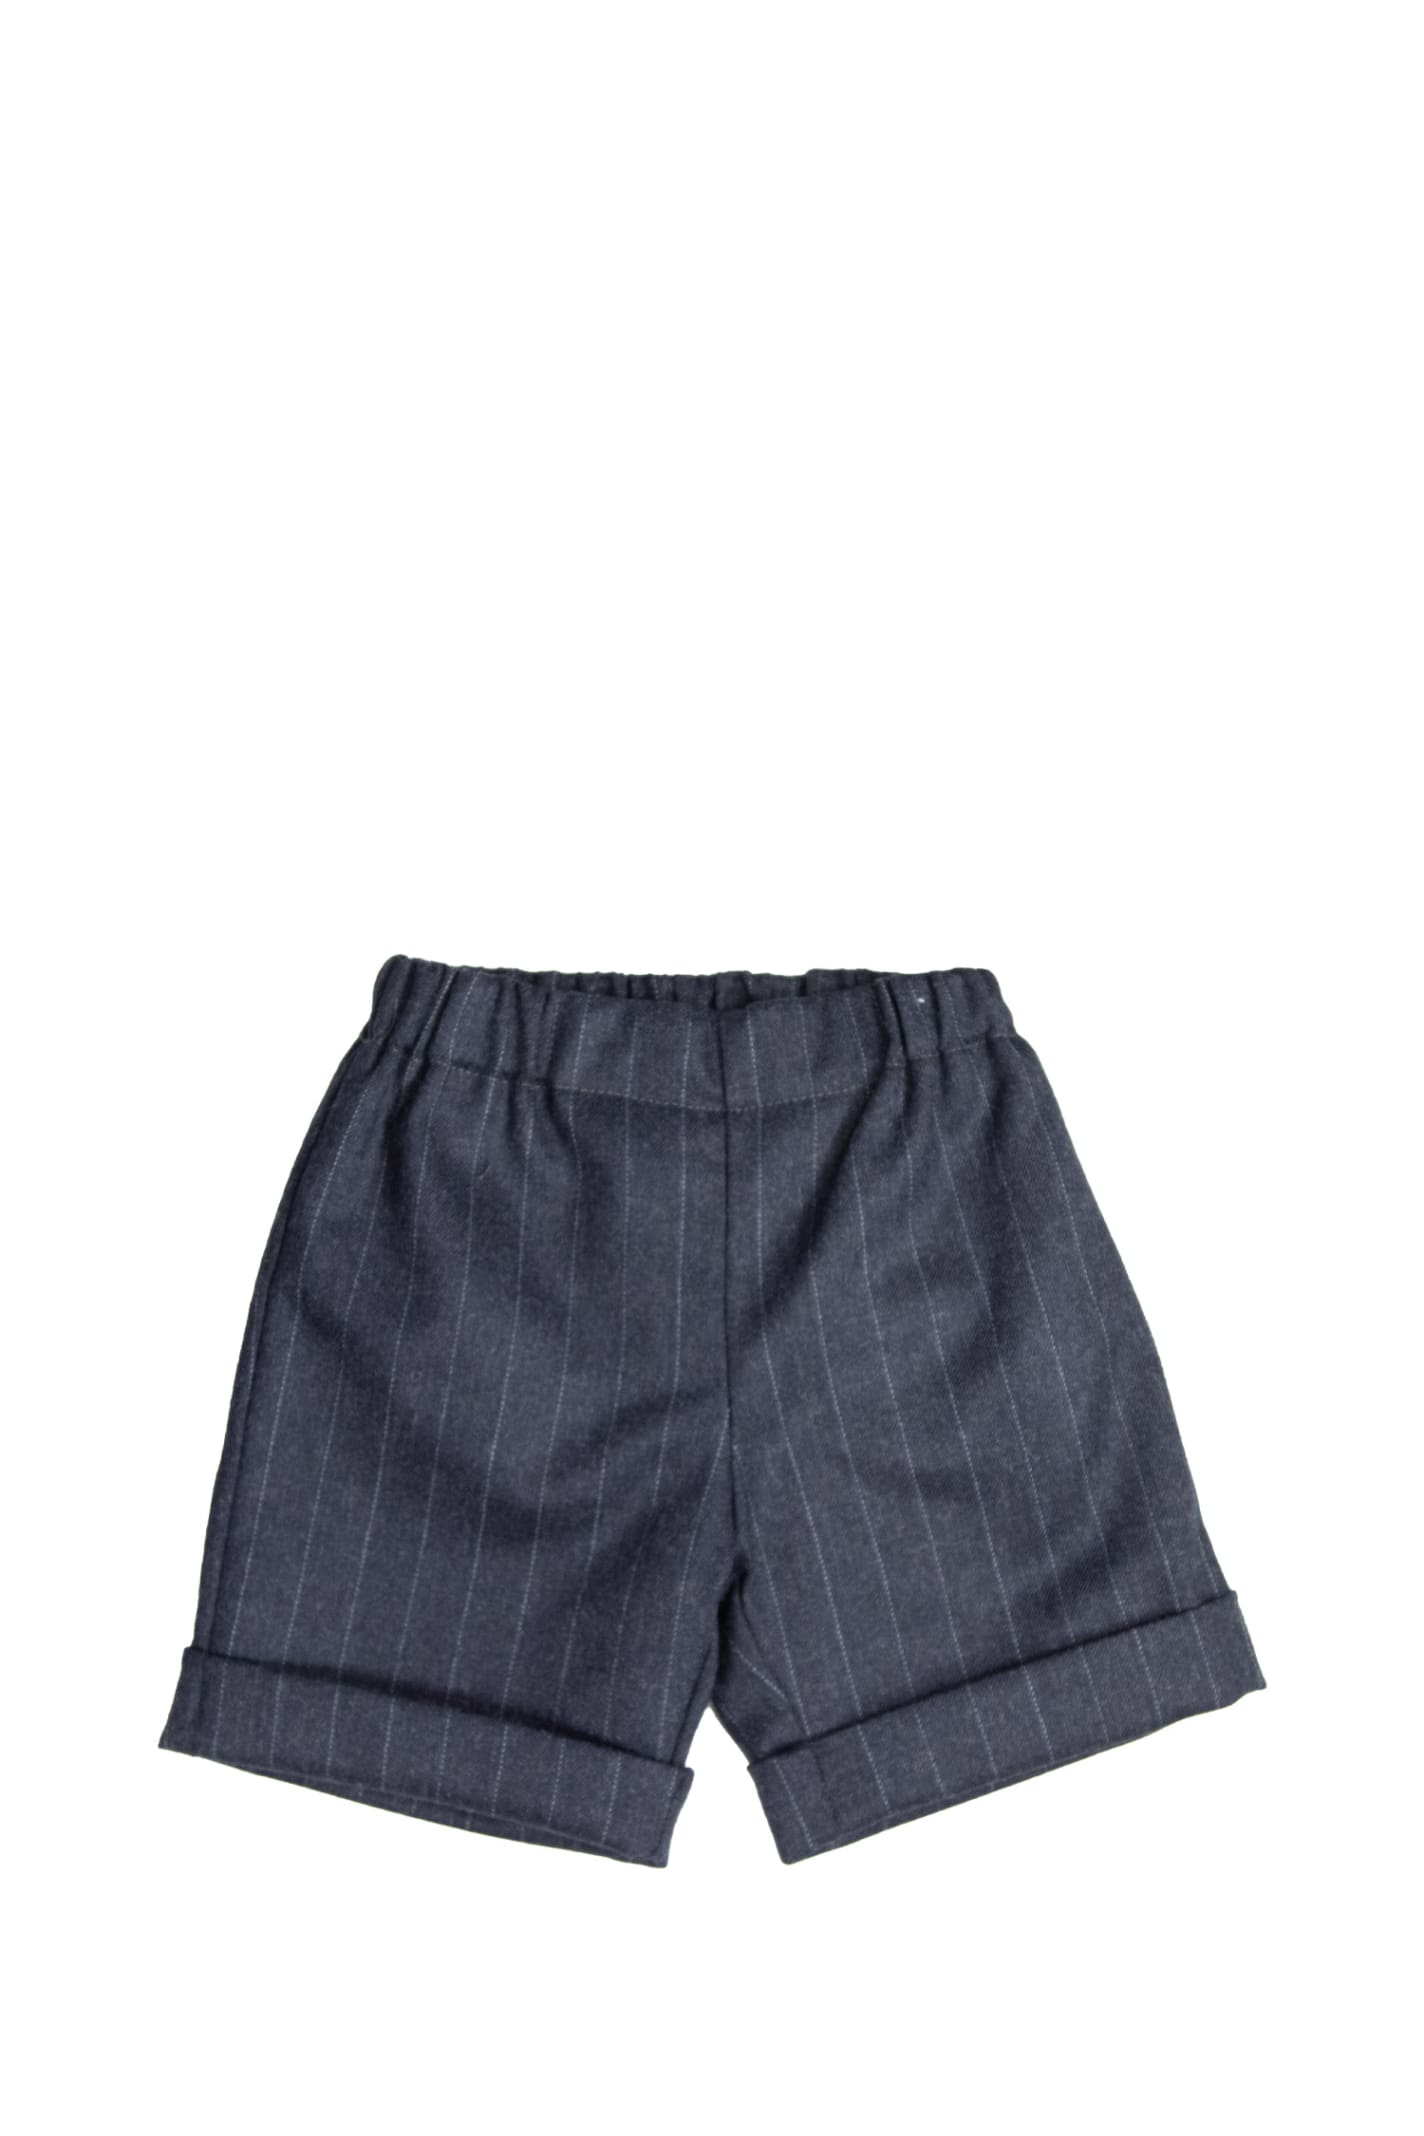 La Stupenderia Kids' Cotton Shorts In Blue